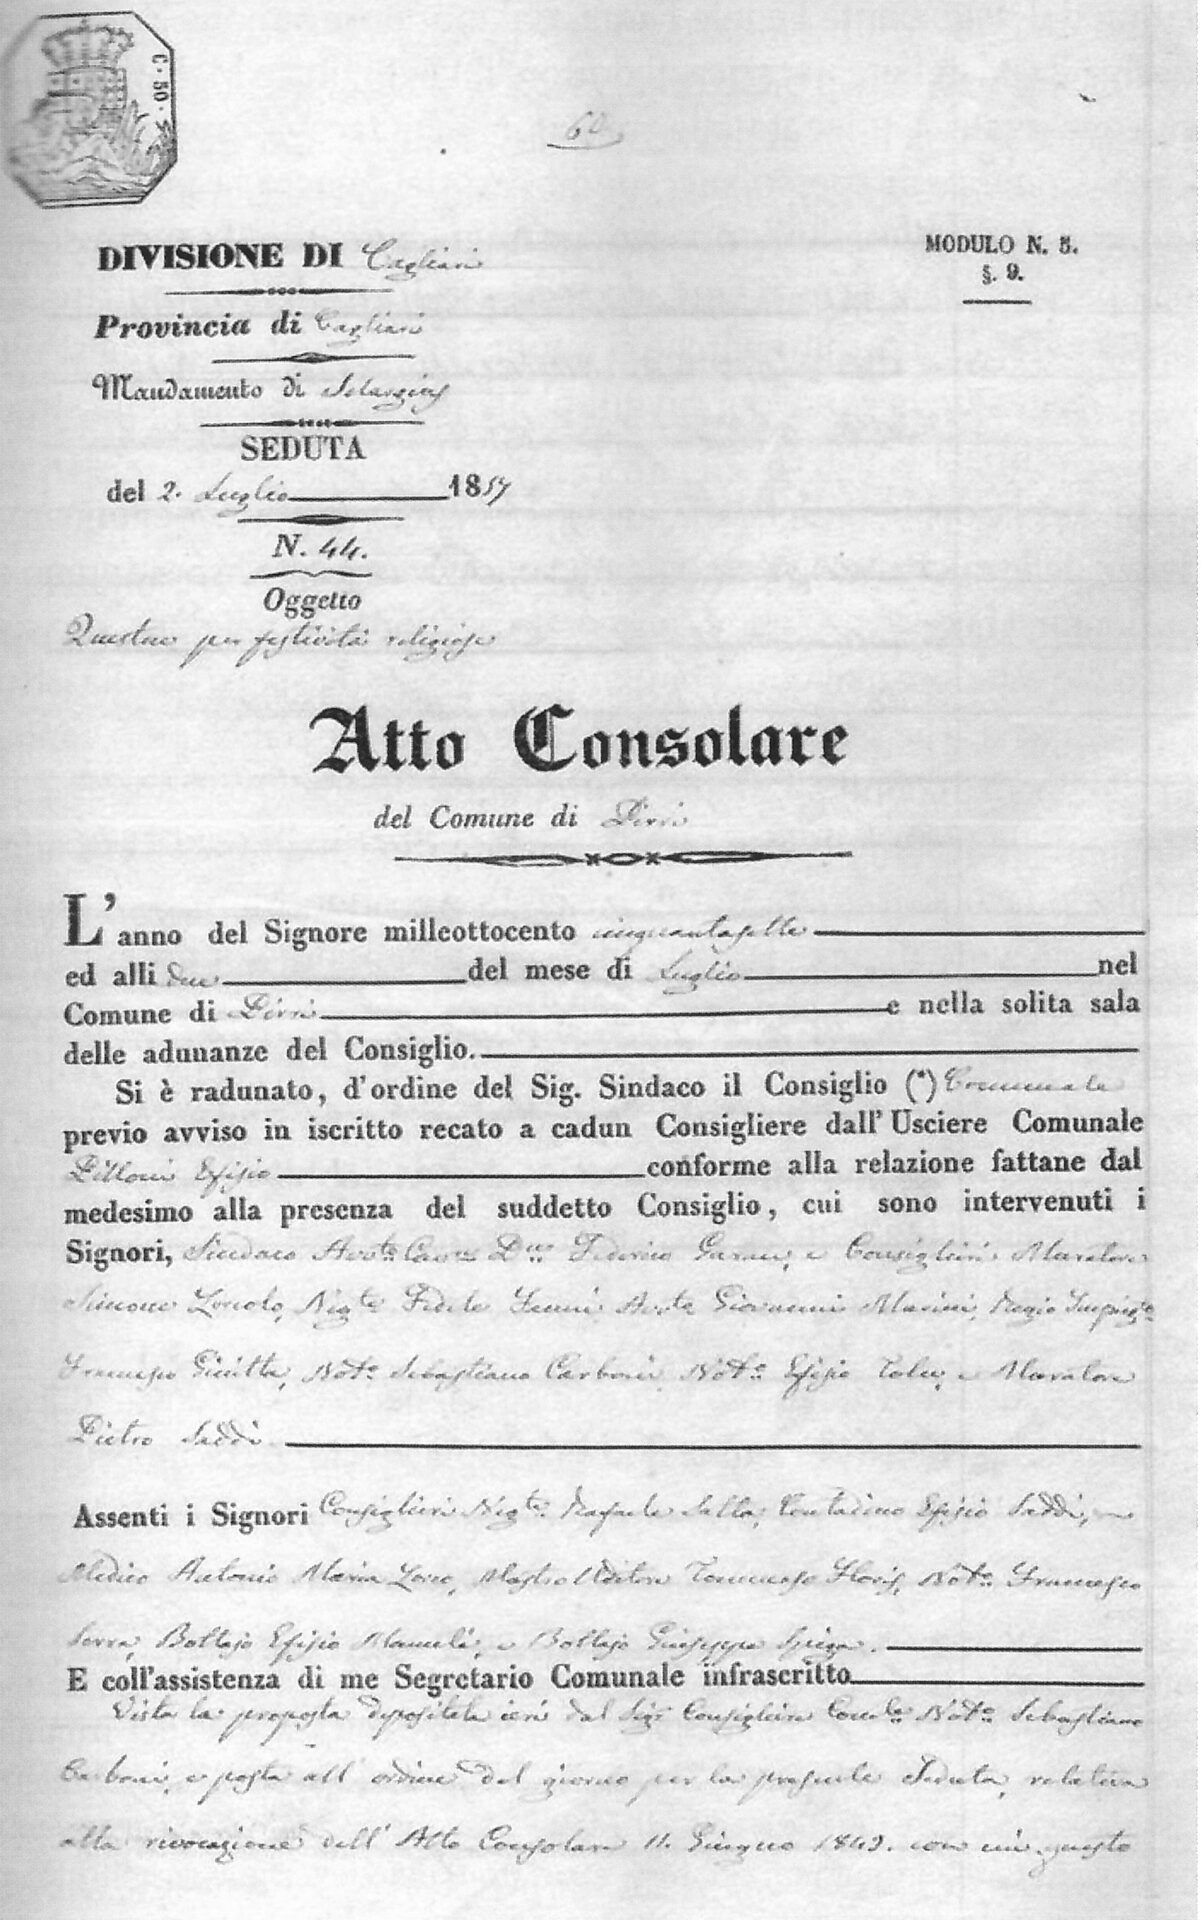 Fig. 1 ARCHIVIO COMUNALE DI CAGLIARI, Registro delle Deliberazioni di Consiglio, Vol. 2, c. 51., Consiglio Comunale di Pirri, delibera del 2 luglio 1857.